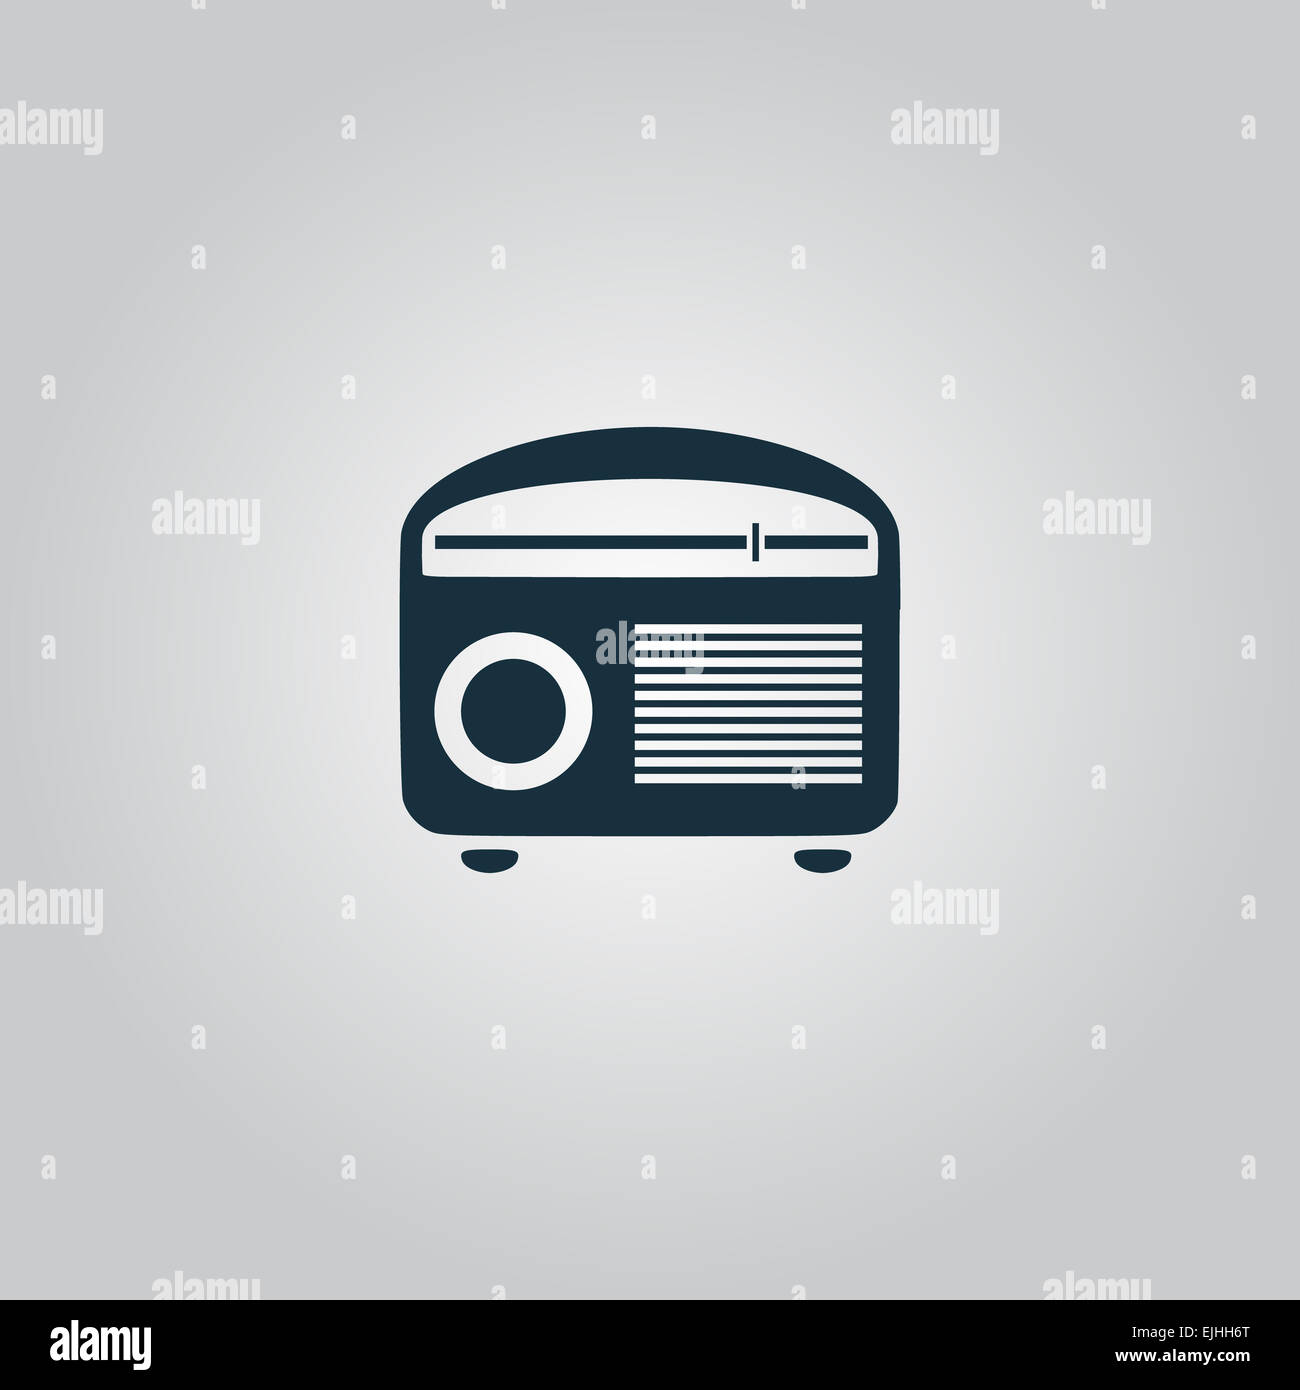 Tuner radio réveil Retro illustration vectorielle. Banque D'Images